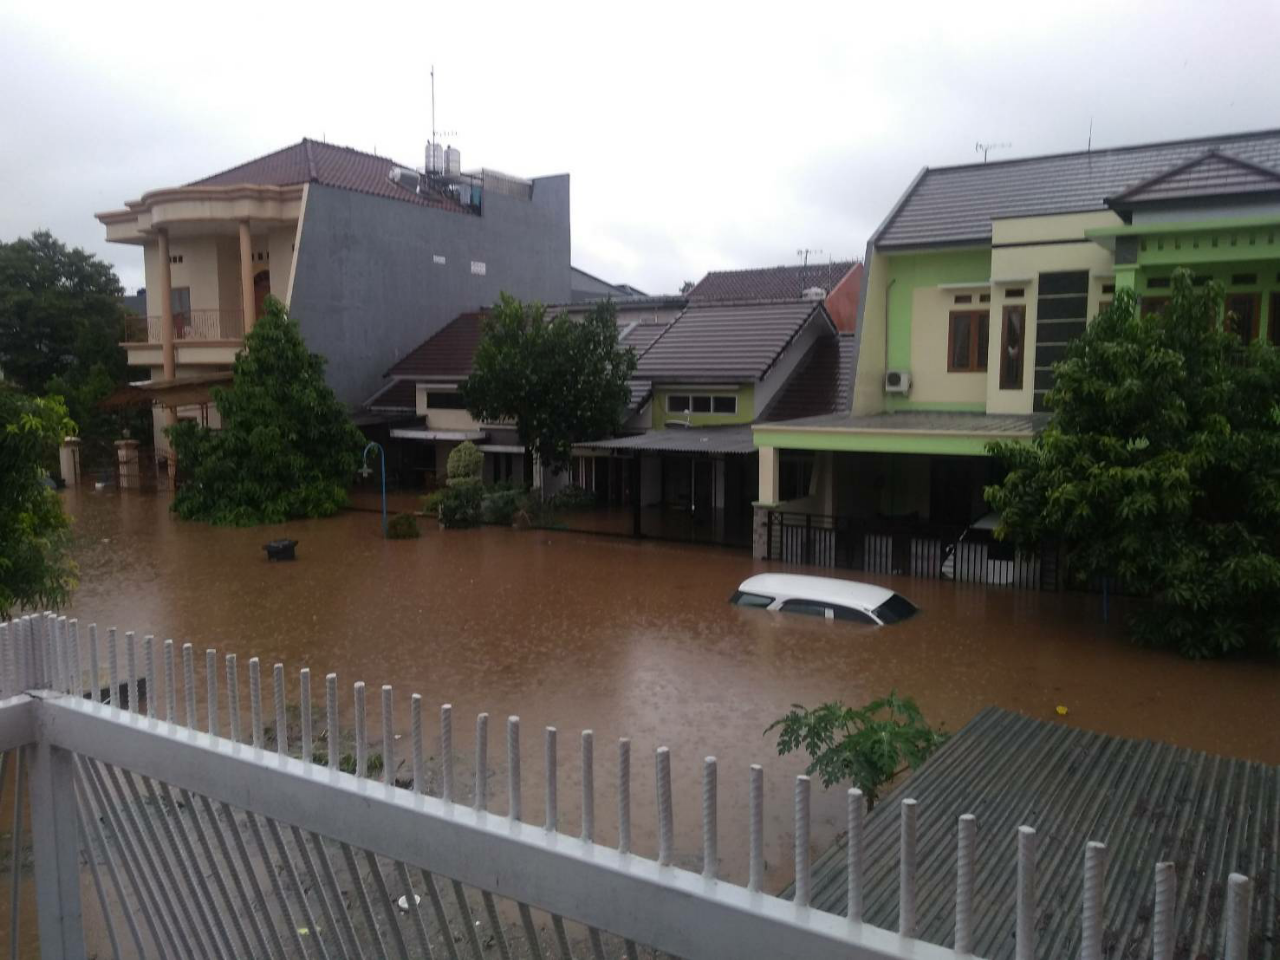 Kompilasi Banjir Akibat Gorong2 Tol di Indonesia